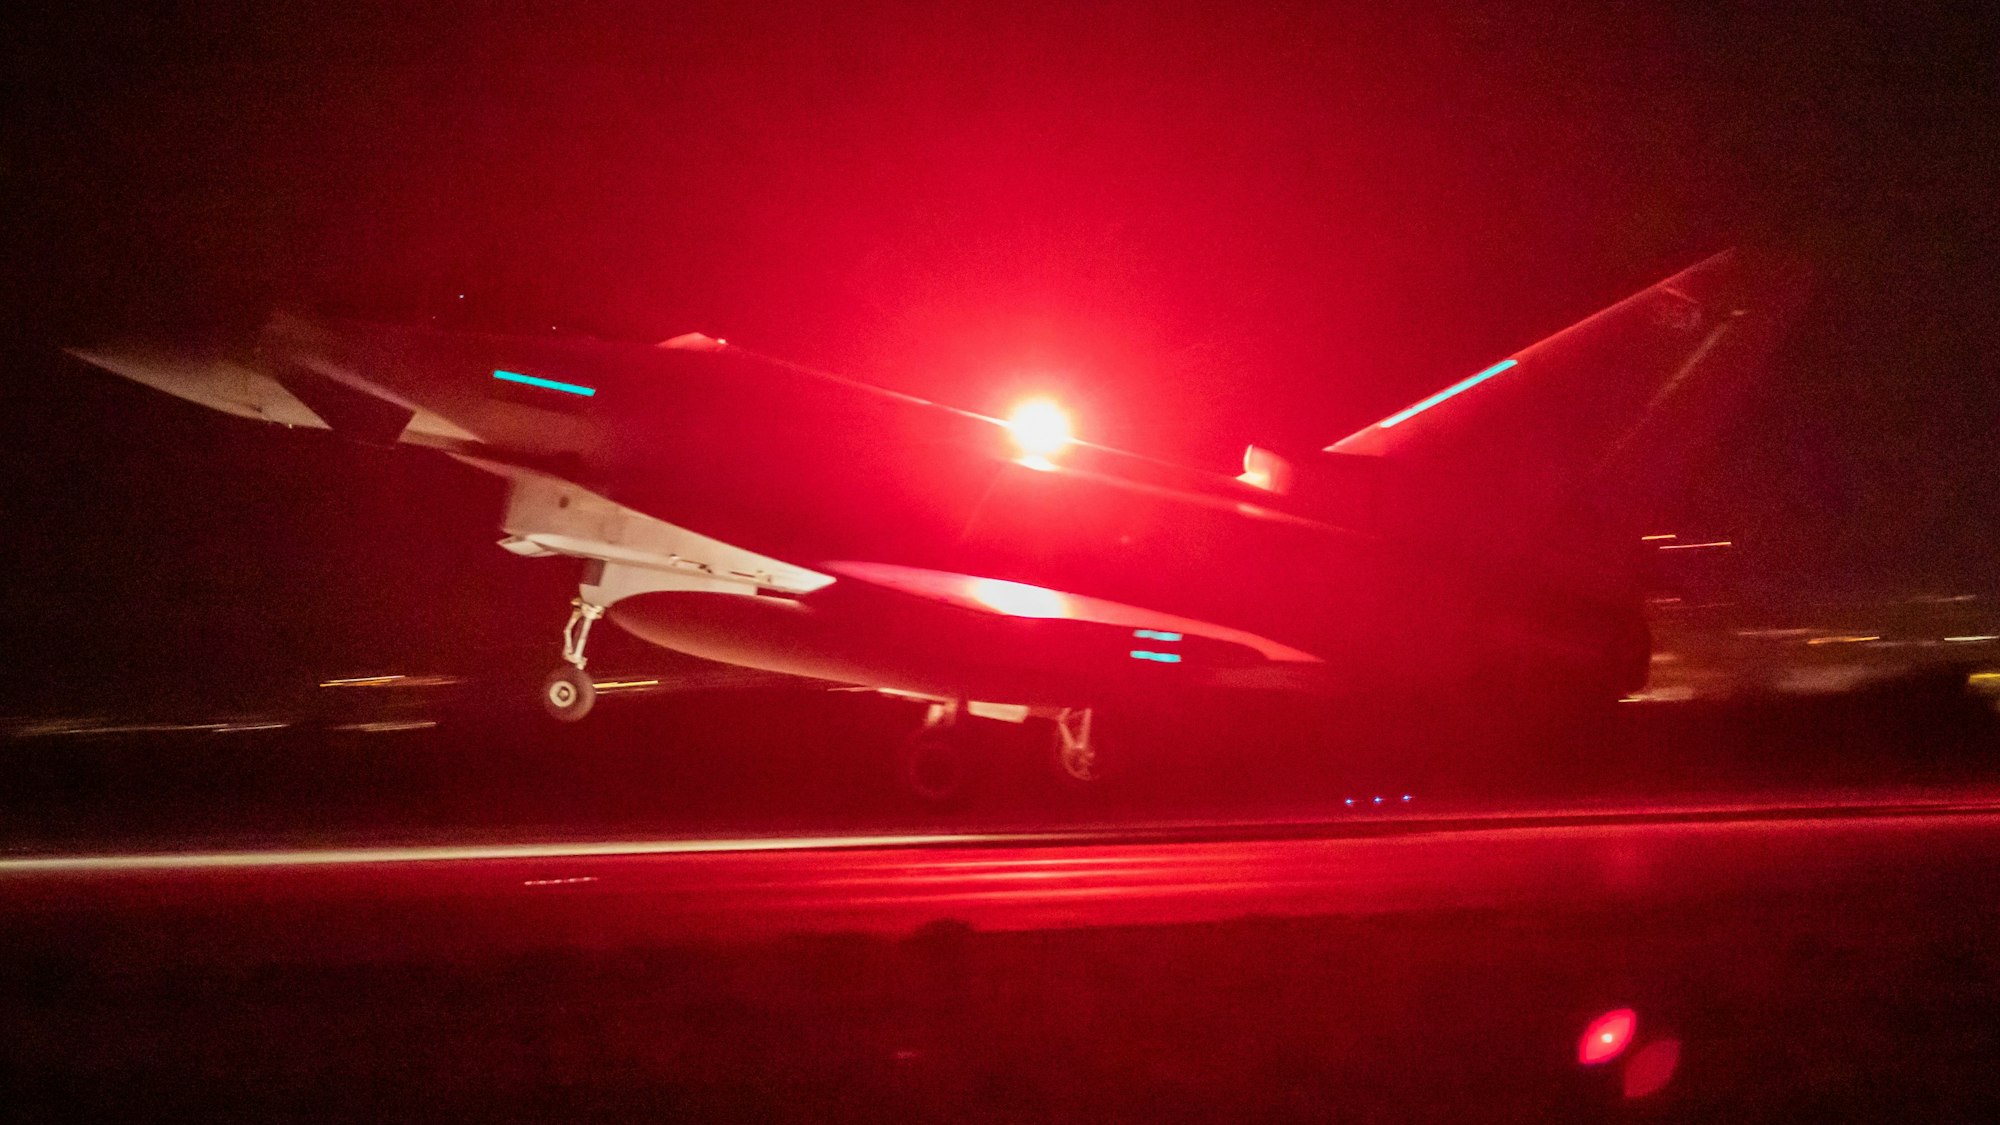 Ein Eurofighter Typhoon der British Royal Air Force beim Start auf einem Luftwaffen-Stützpunkt. Dabei ist ein rotes Warnlicht angeschaltet. (Archivbild)